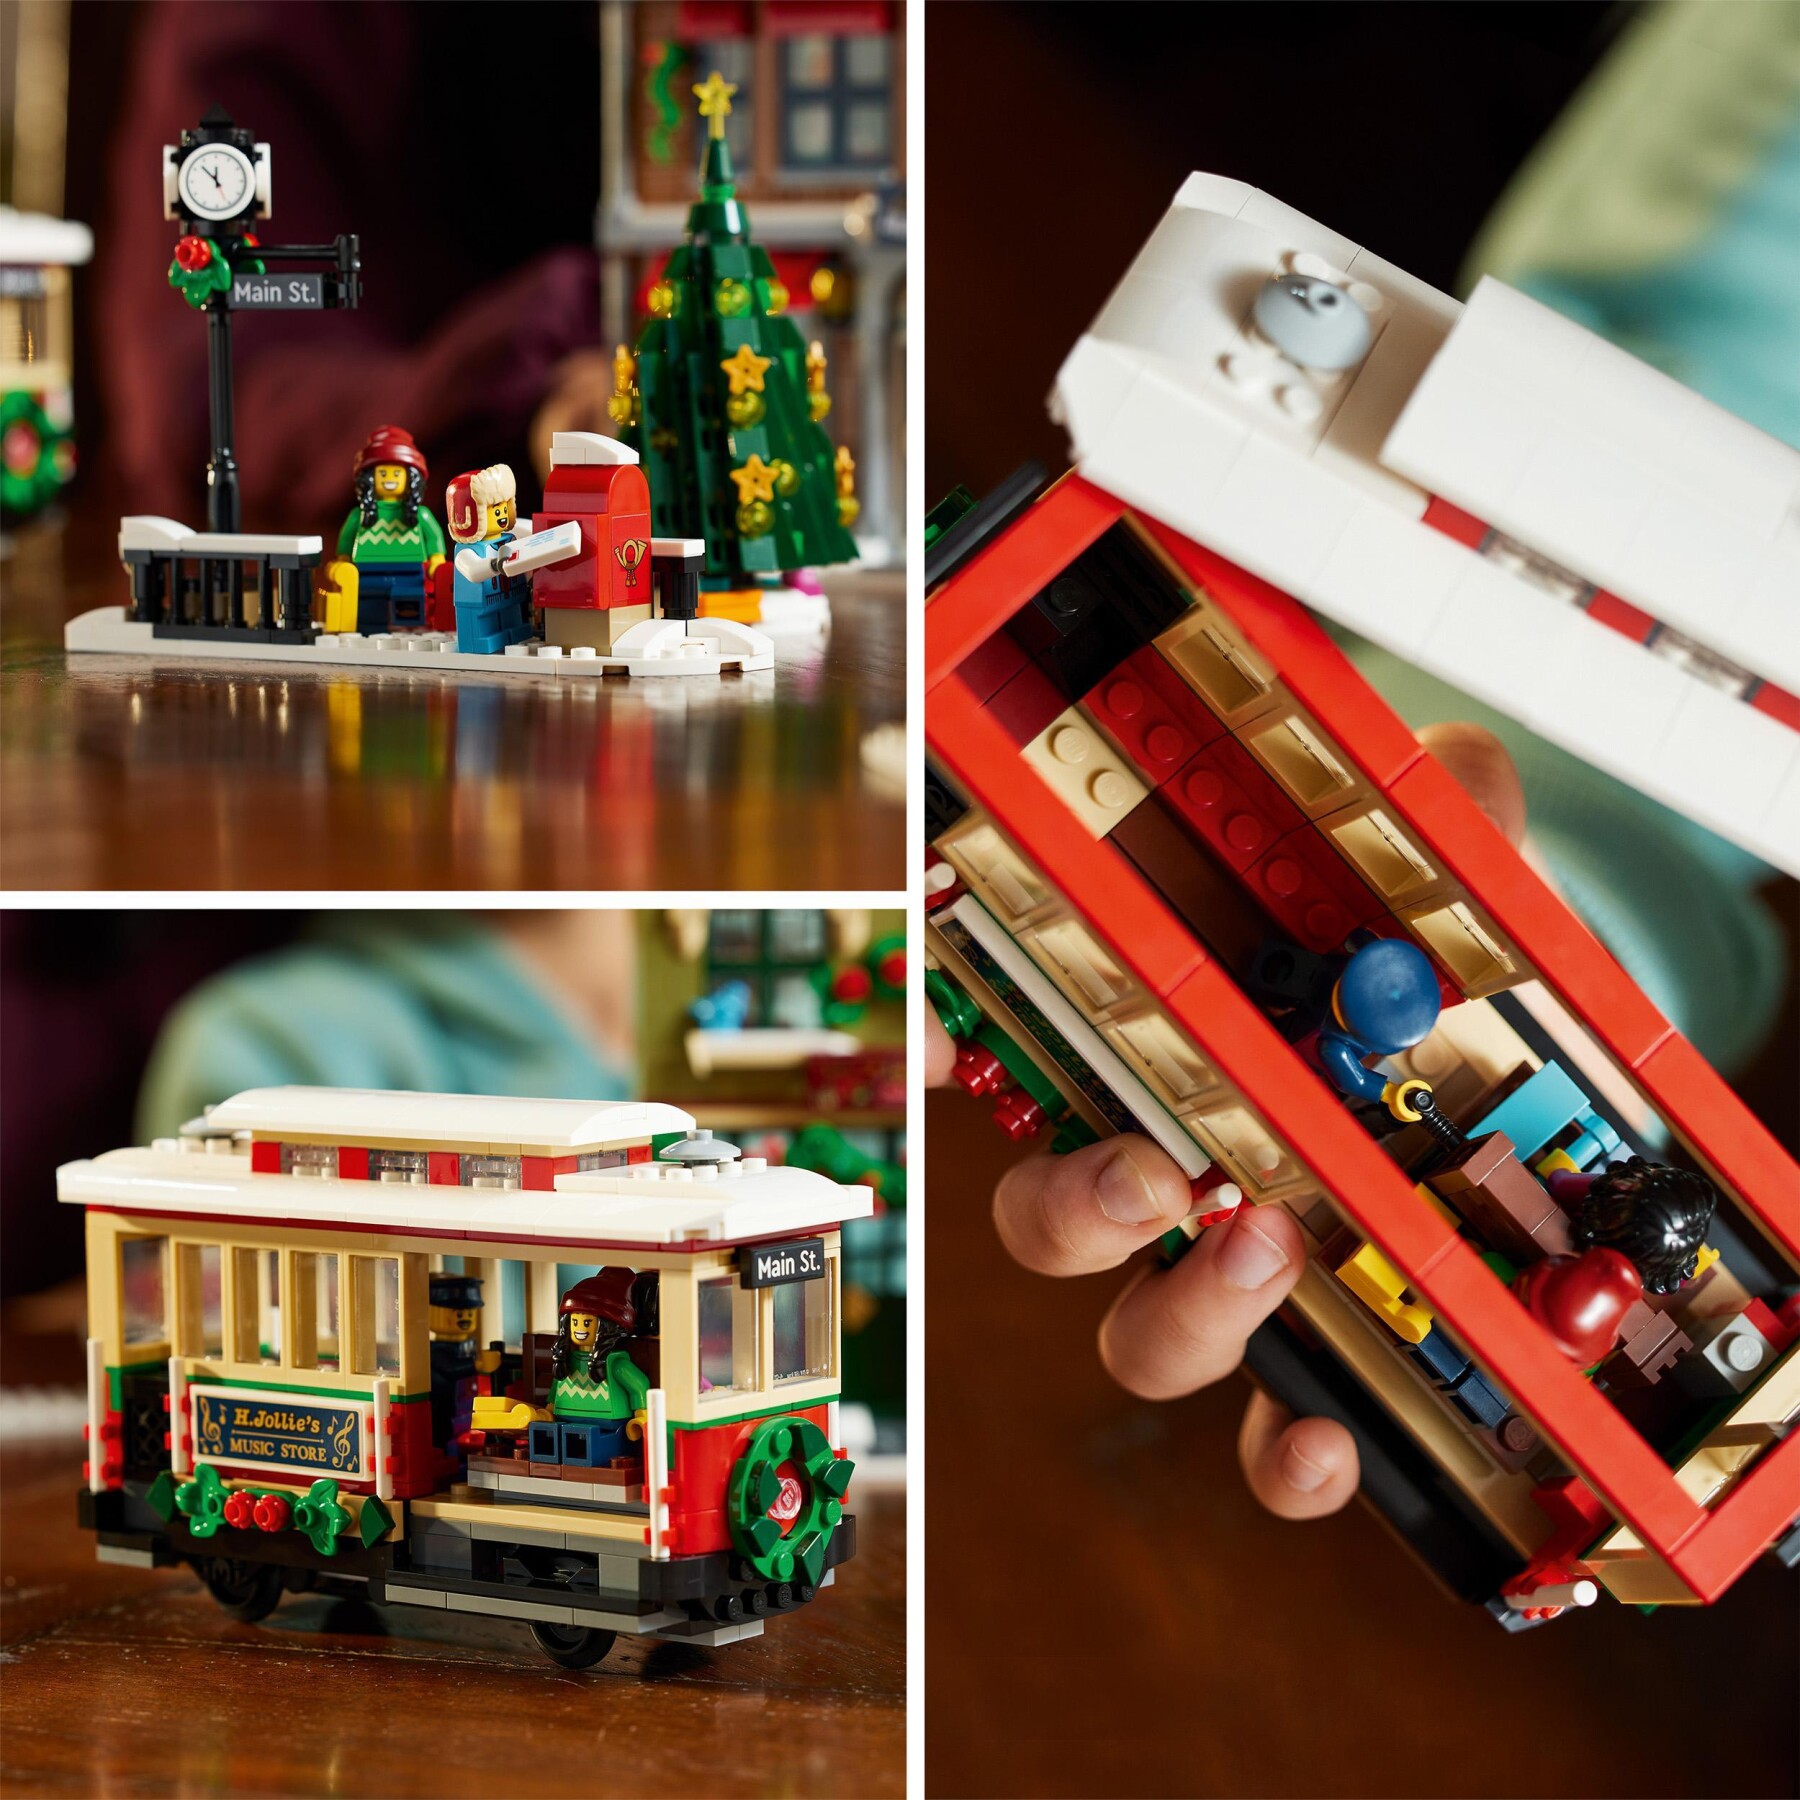 Lego icons 10308 festività nella strada principale, modellino da costruire di villaggio con decorazioni natalizie, idea regalo - LEGO ICONS